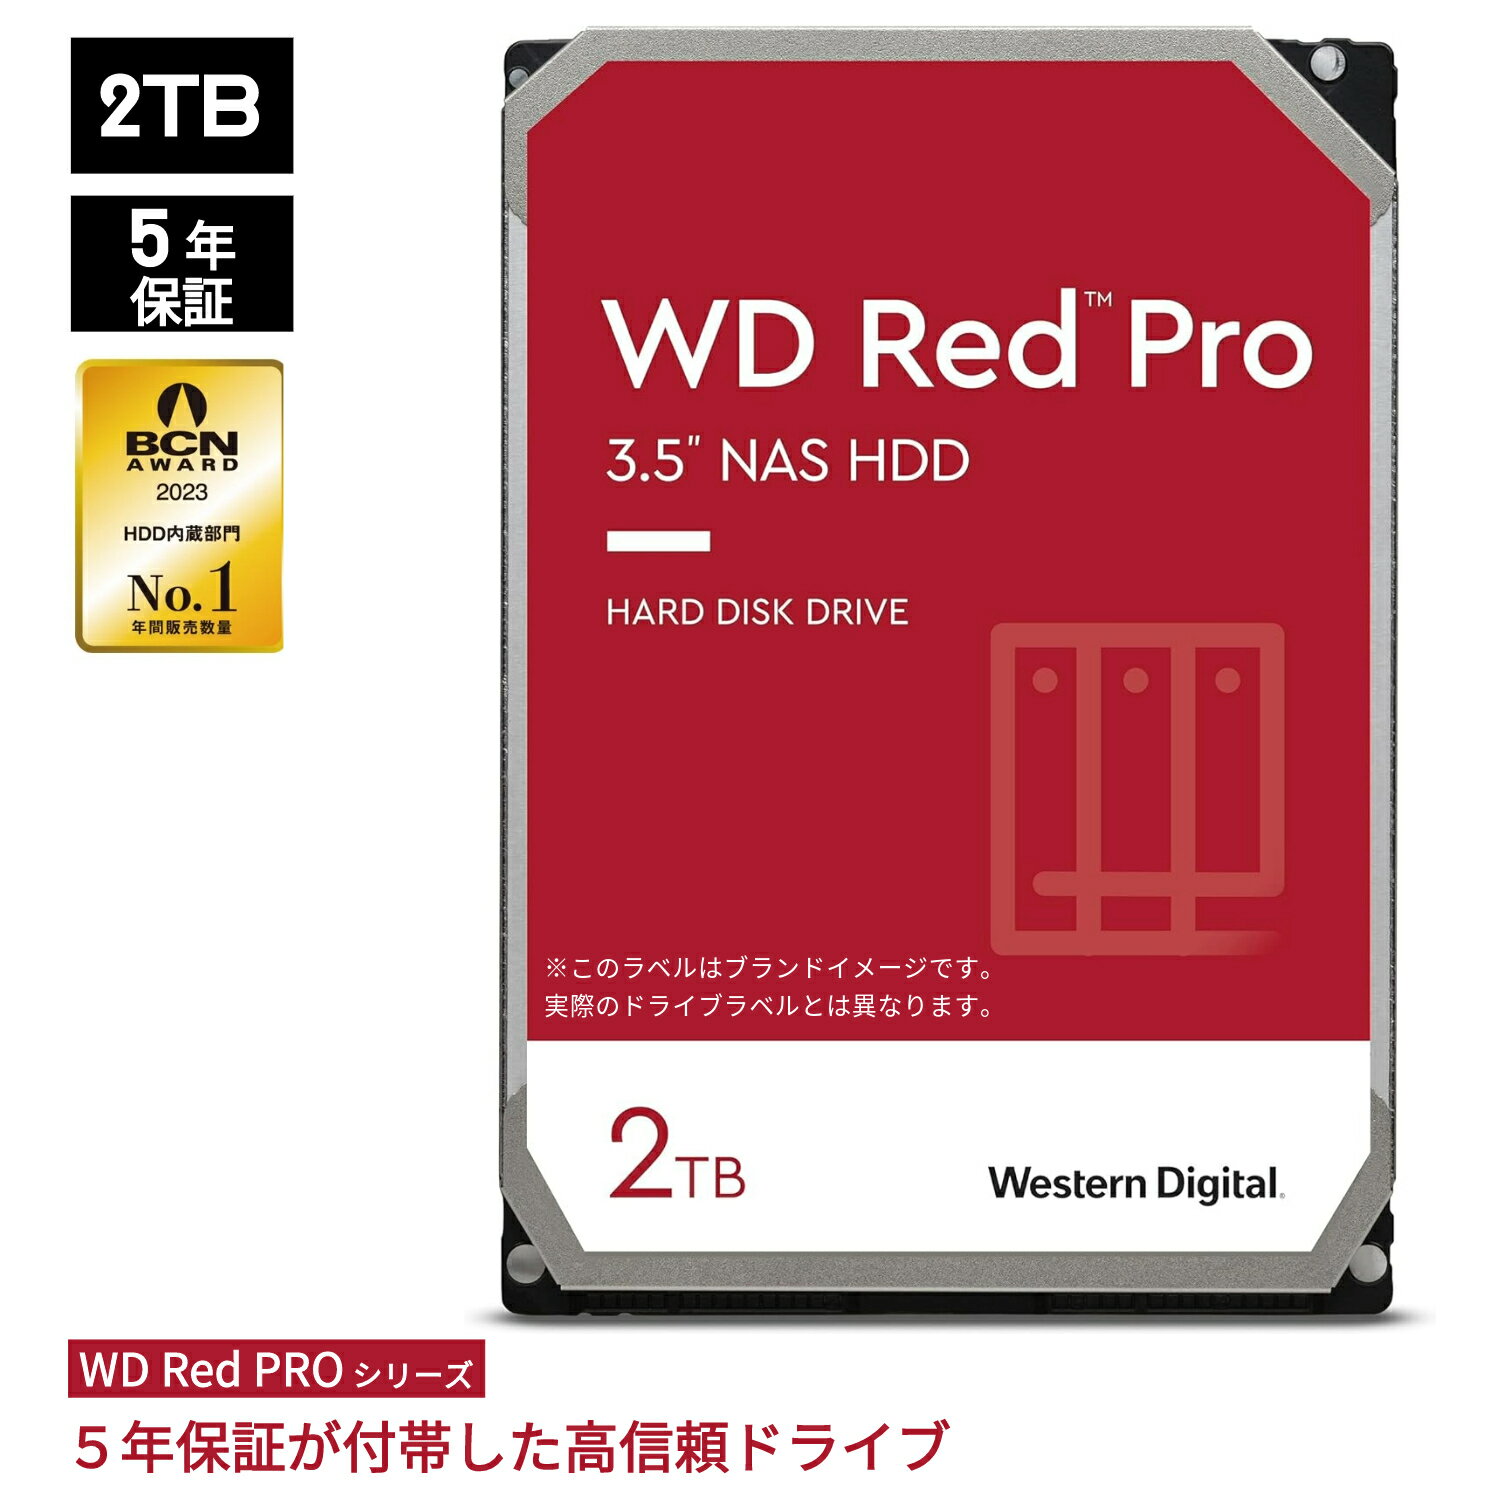 【国内正規流通品】 Western Digital ウエスタンデジタル 内蔵 HDD 2TB WD Red Pro NAS RAID (CMR) 3.5インチ WD2002FFSX | 内蔵hdd パソコン ハードディスクドライブ ec 増設 サーバー サーバ 省電力 PCパーツ